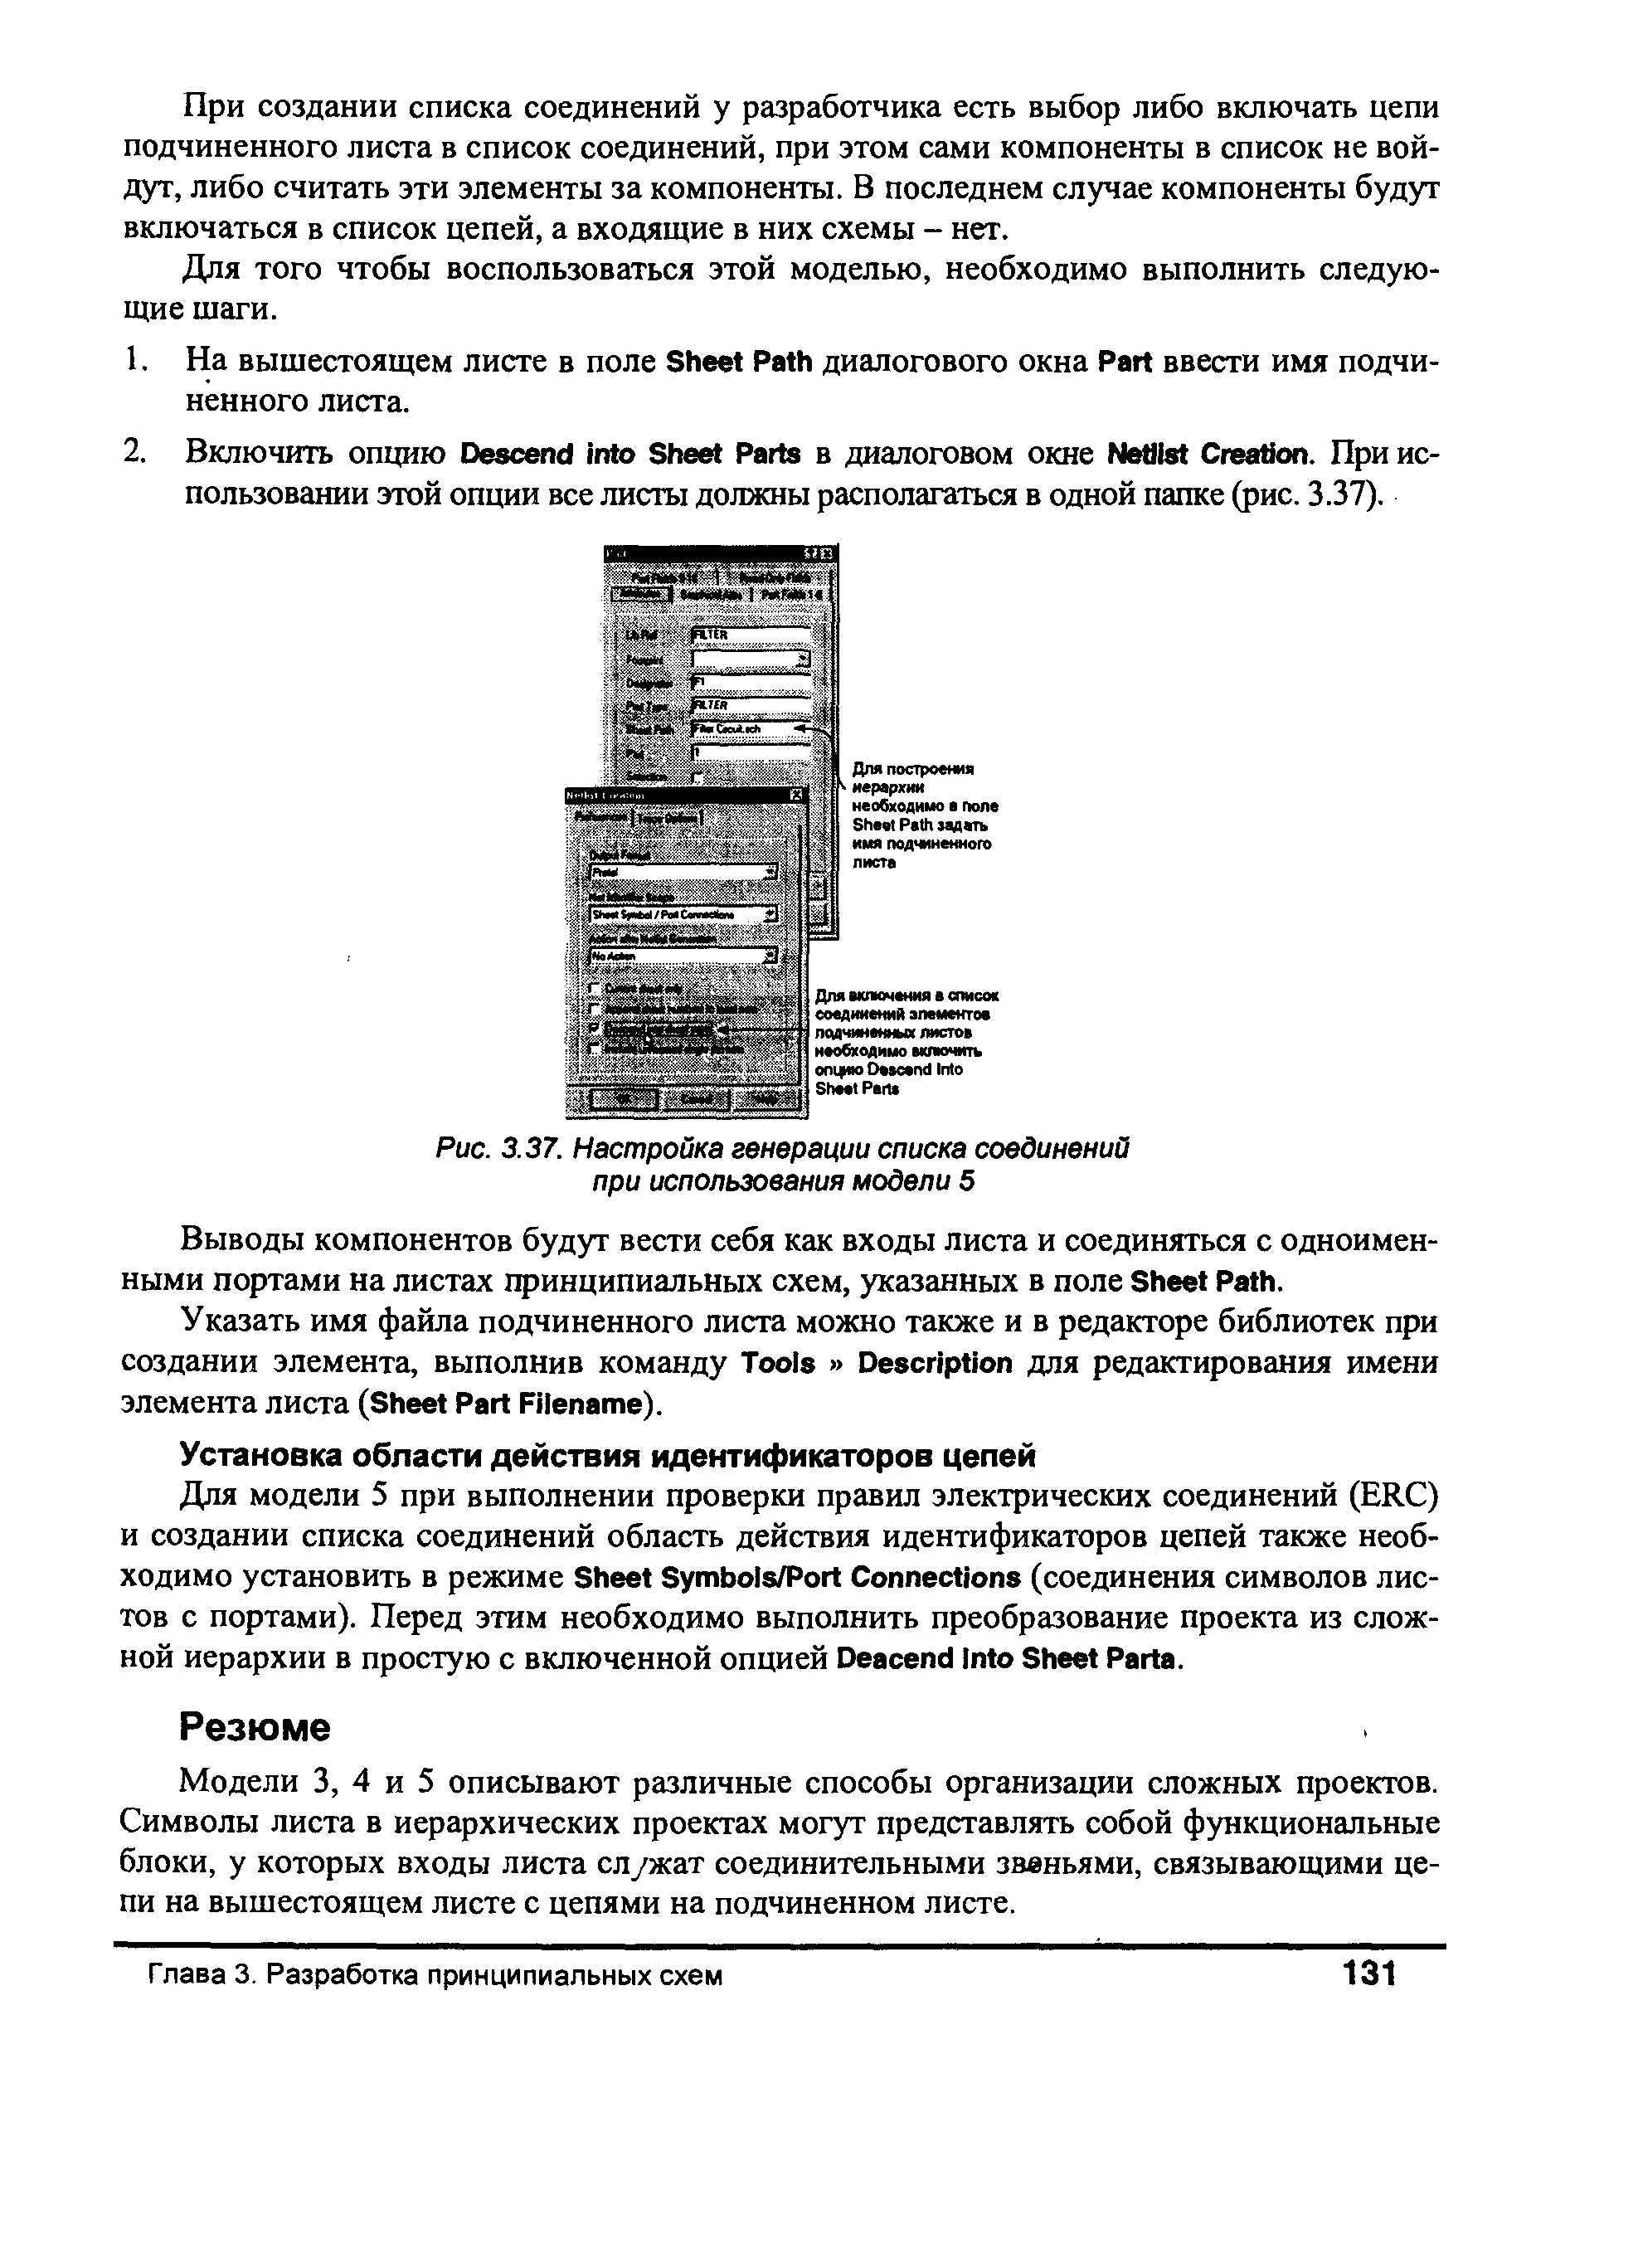 Рис. 3.37. Настройка генерации списка соединений при использования модели 5
